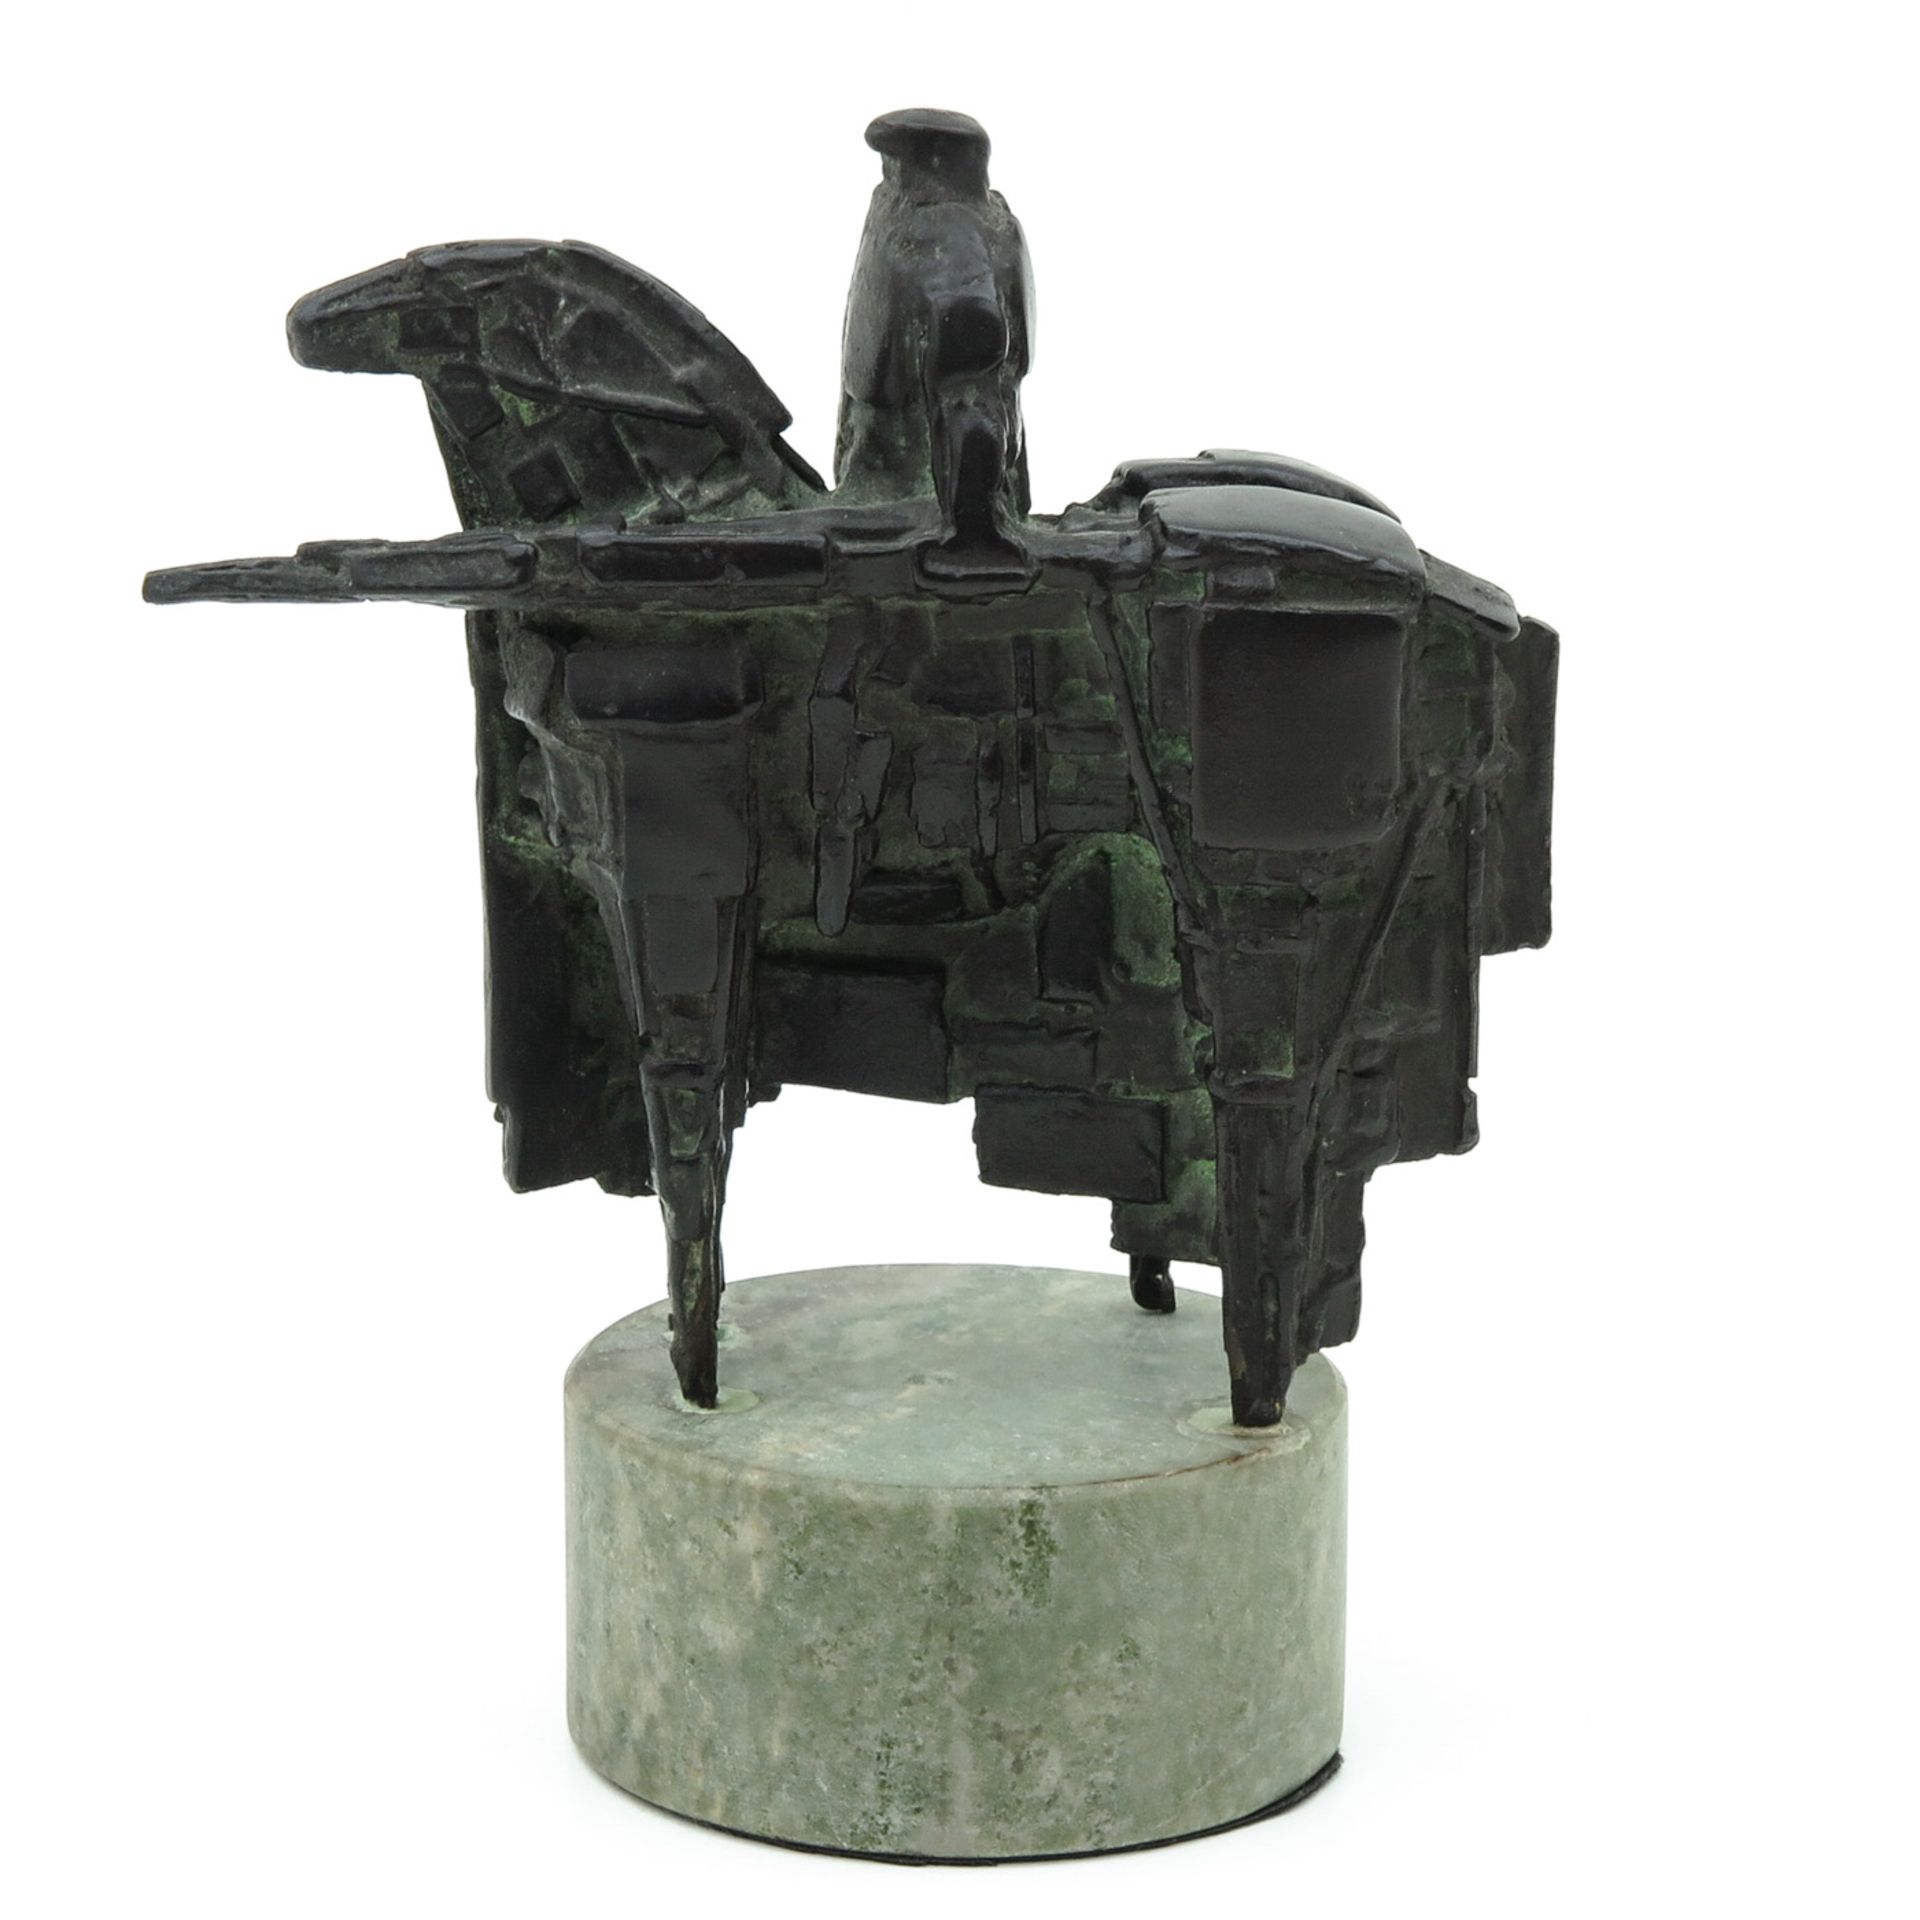 A Bronze Sculpture